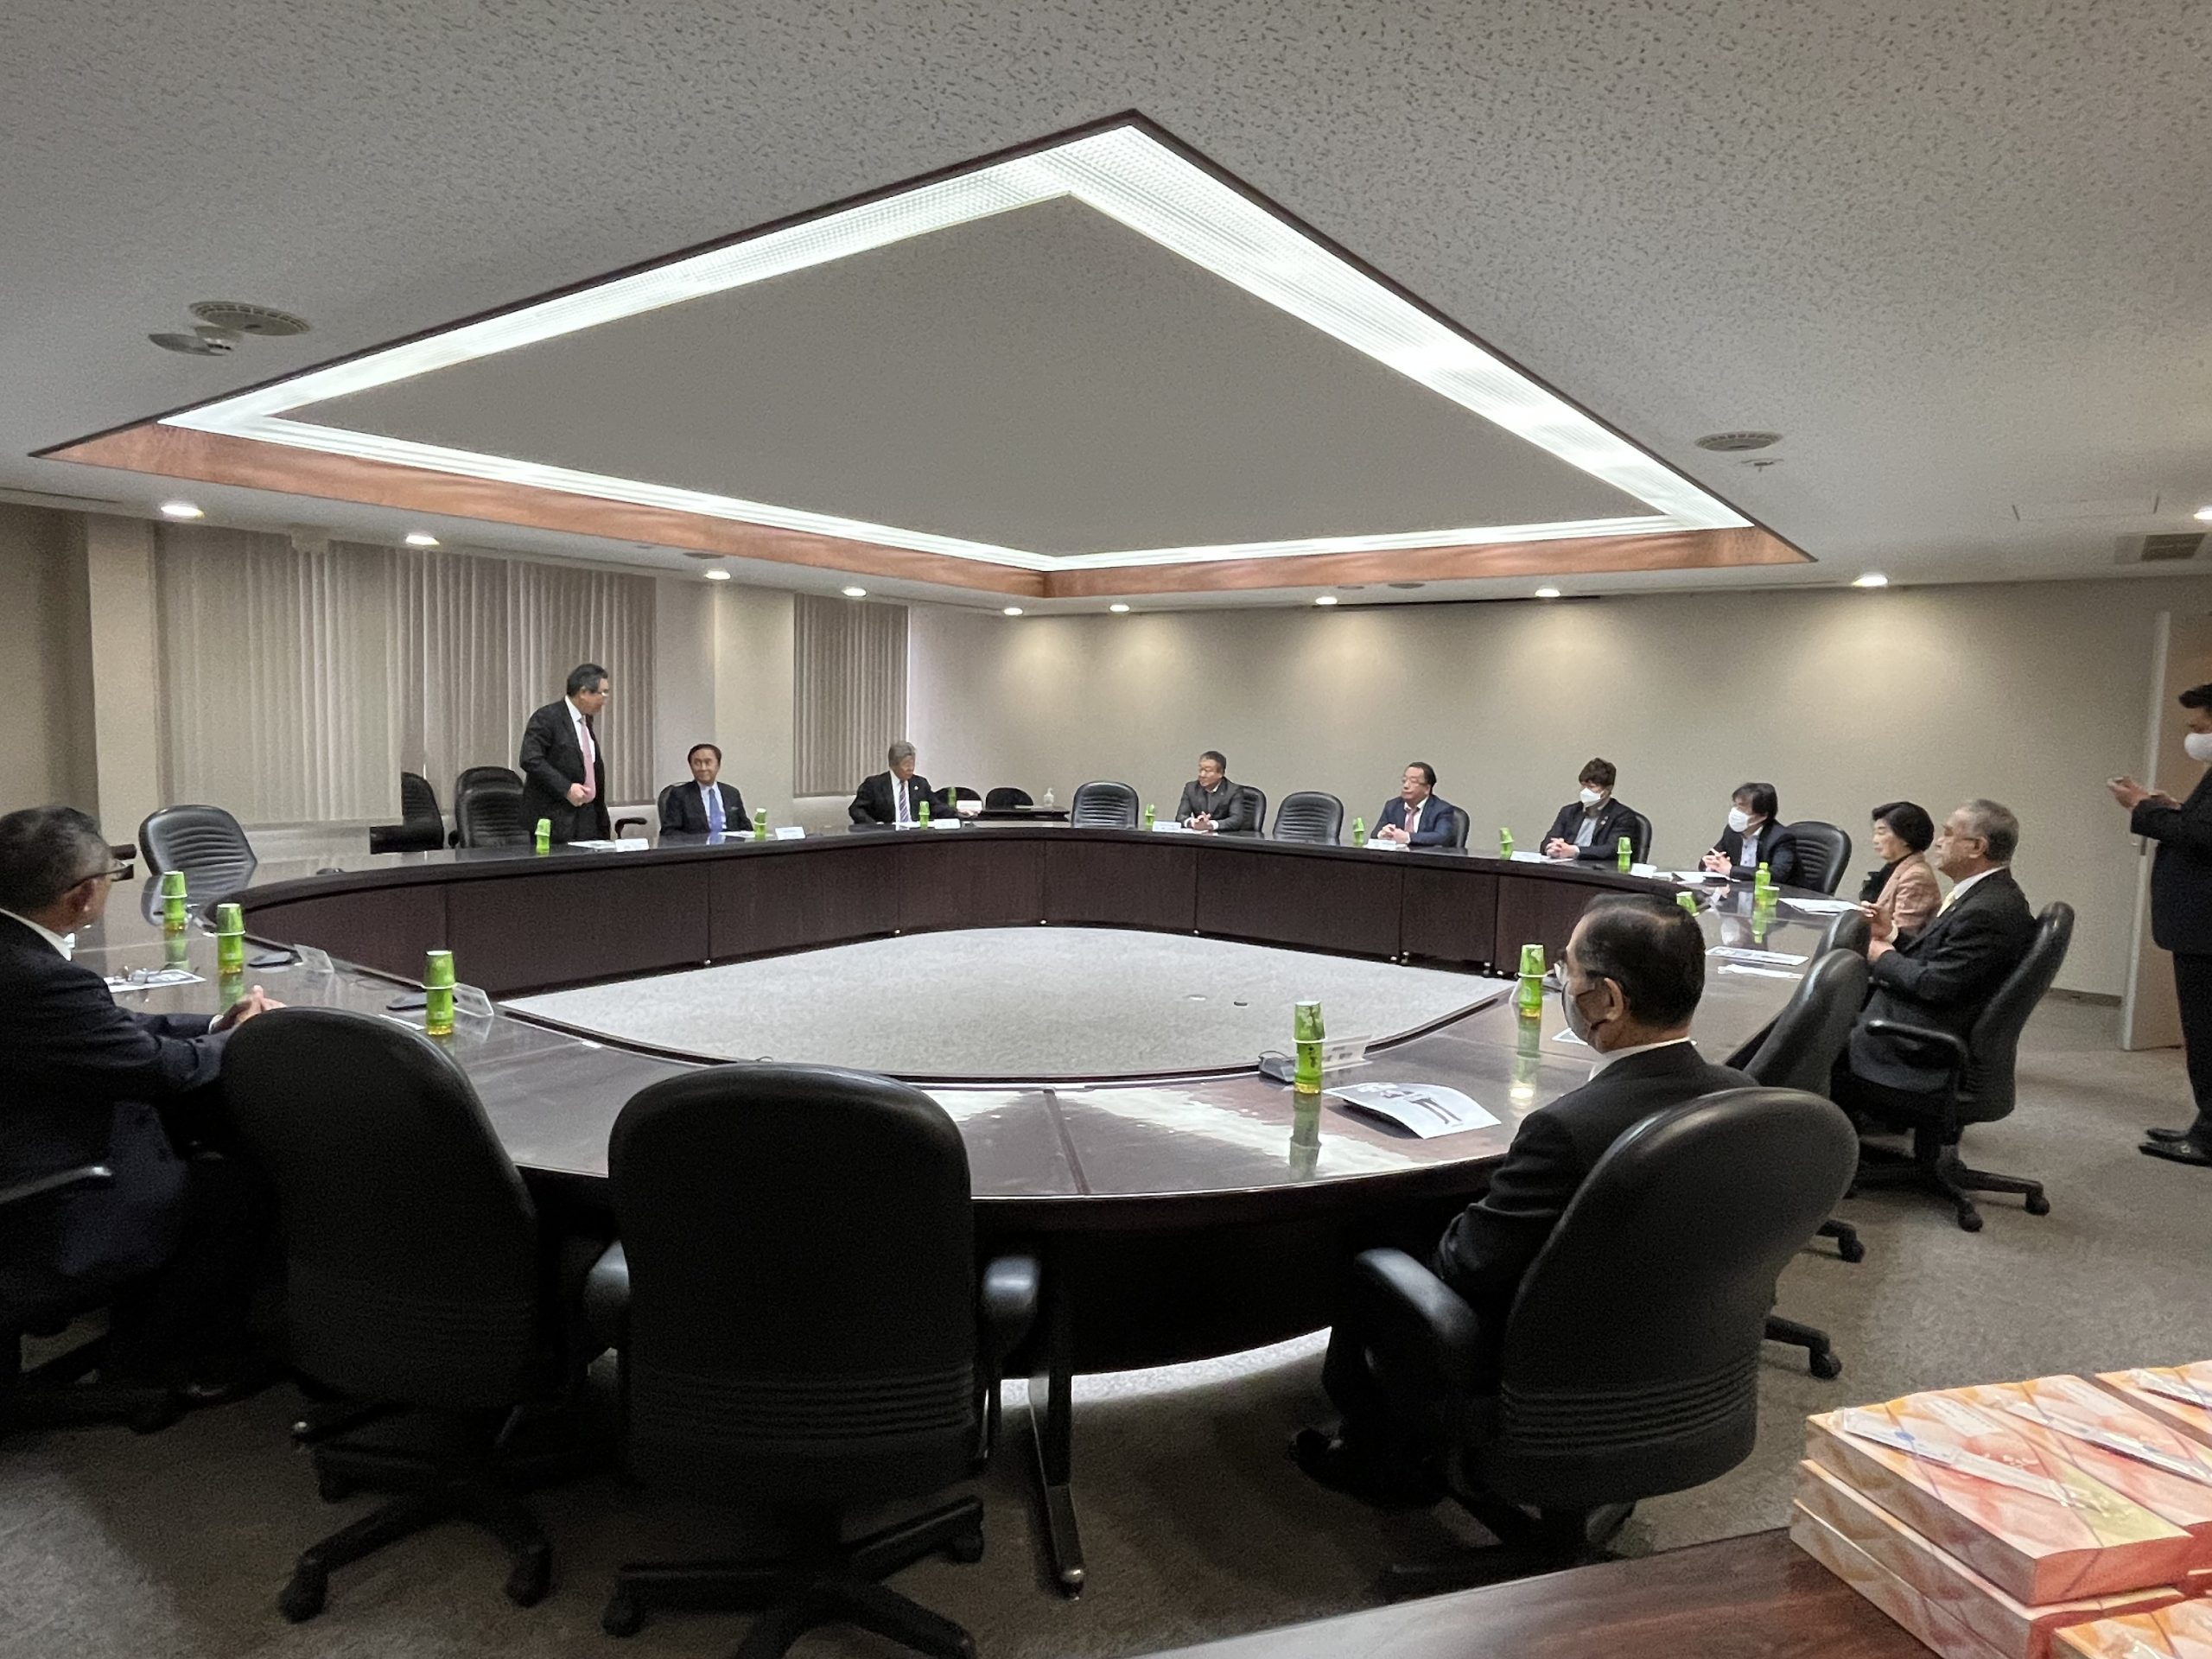 黒岩祐治神奈川県知事選挙立候補者が本連盟を表敬訪問